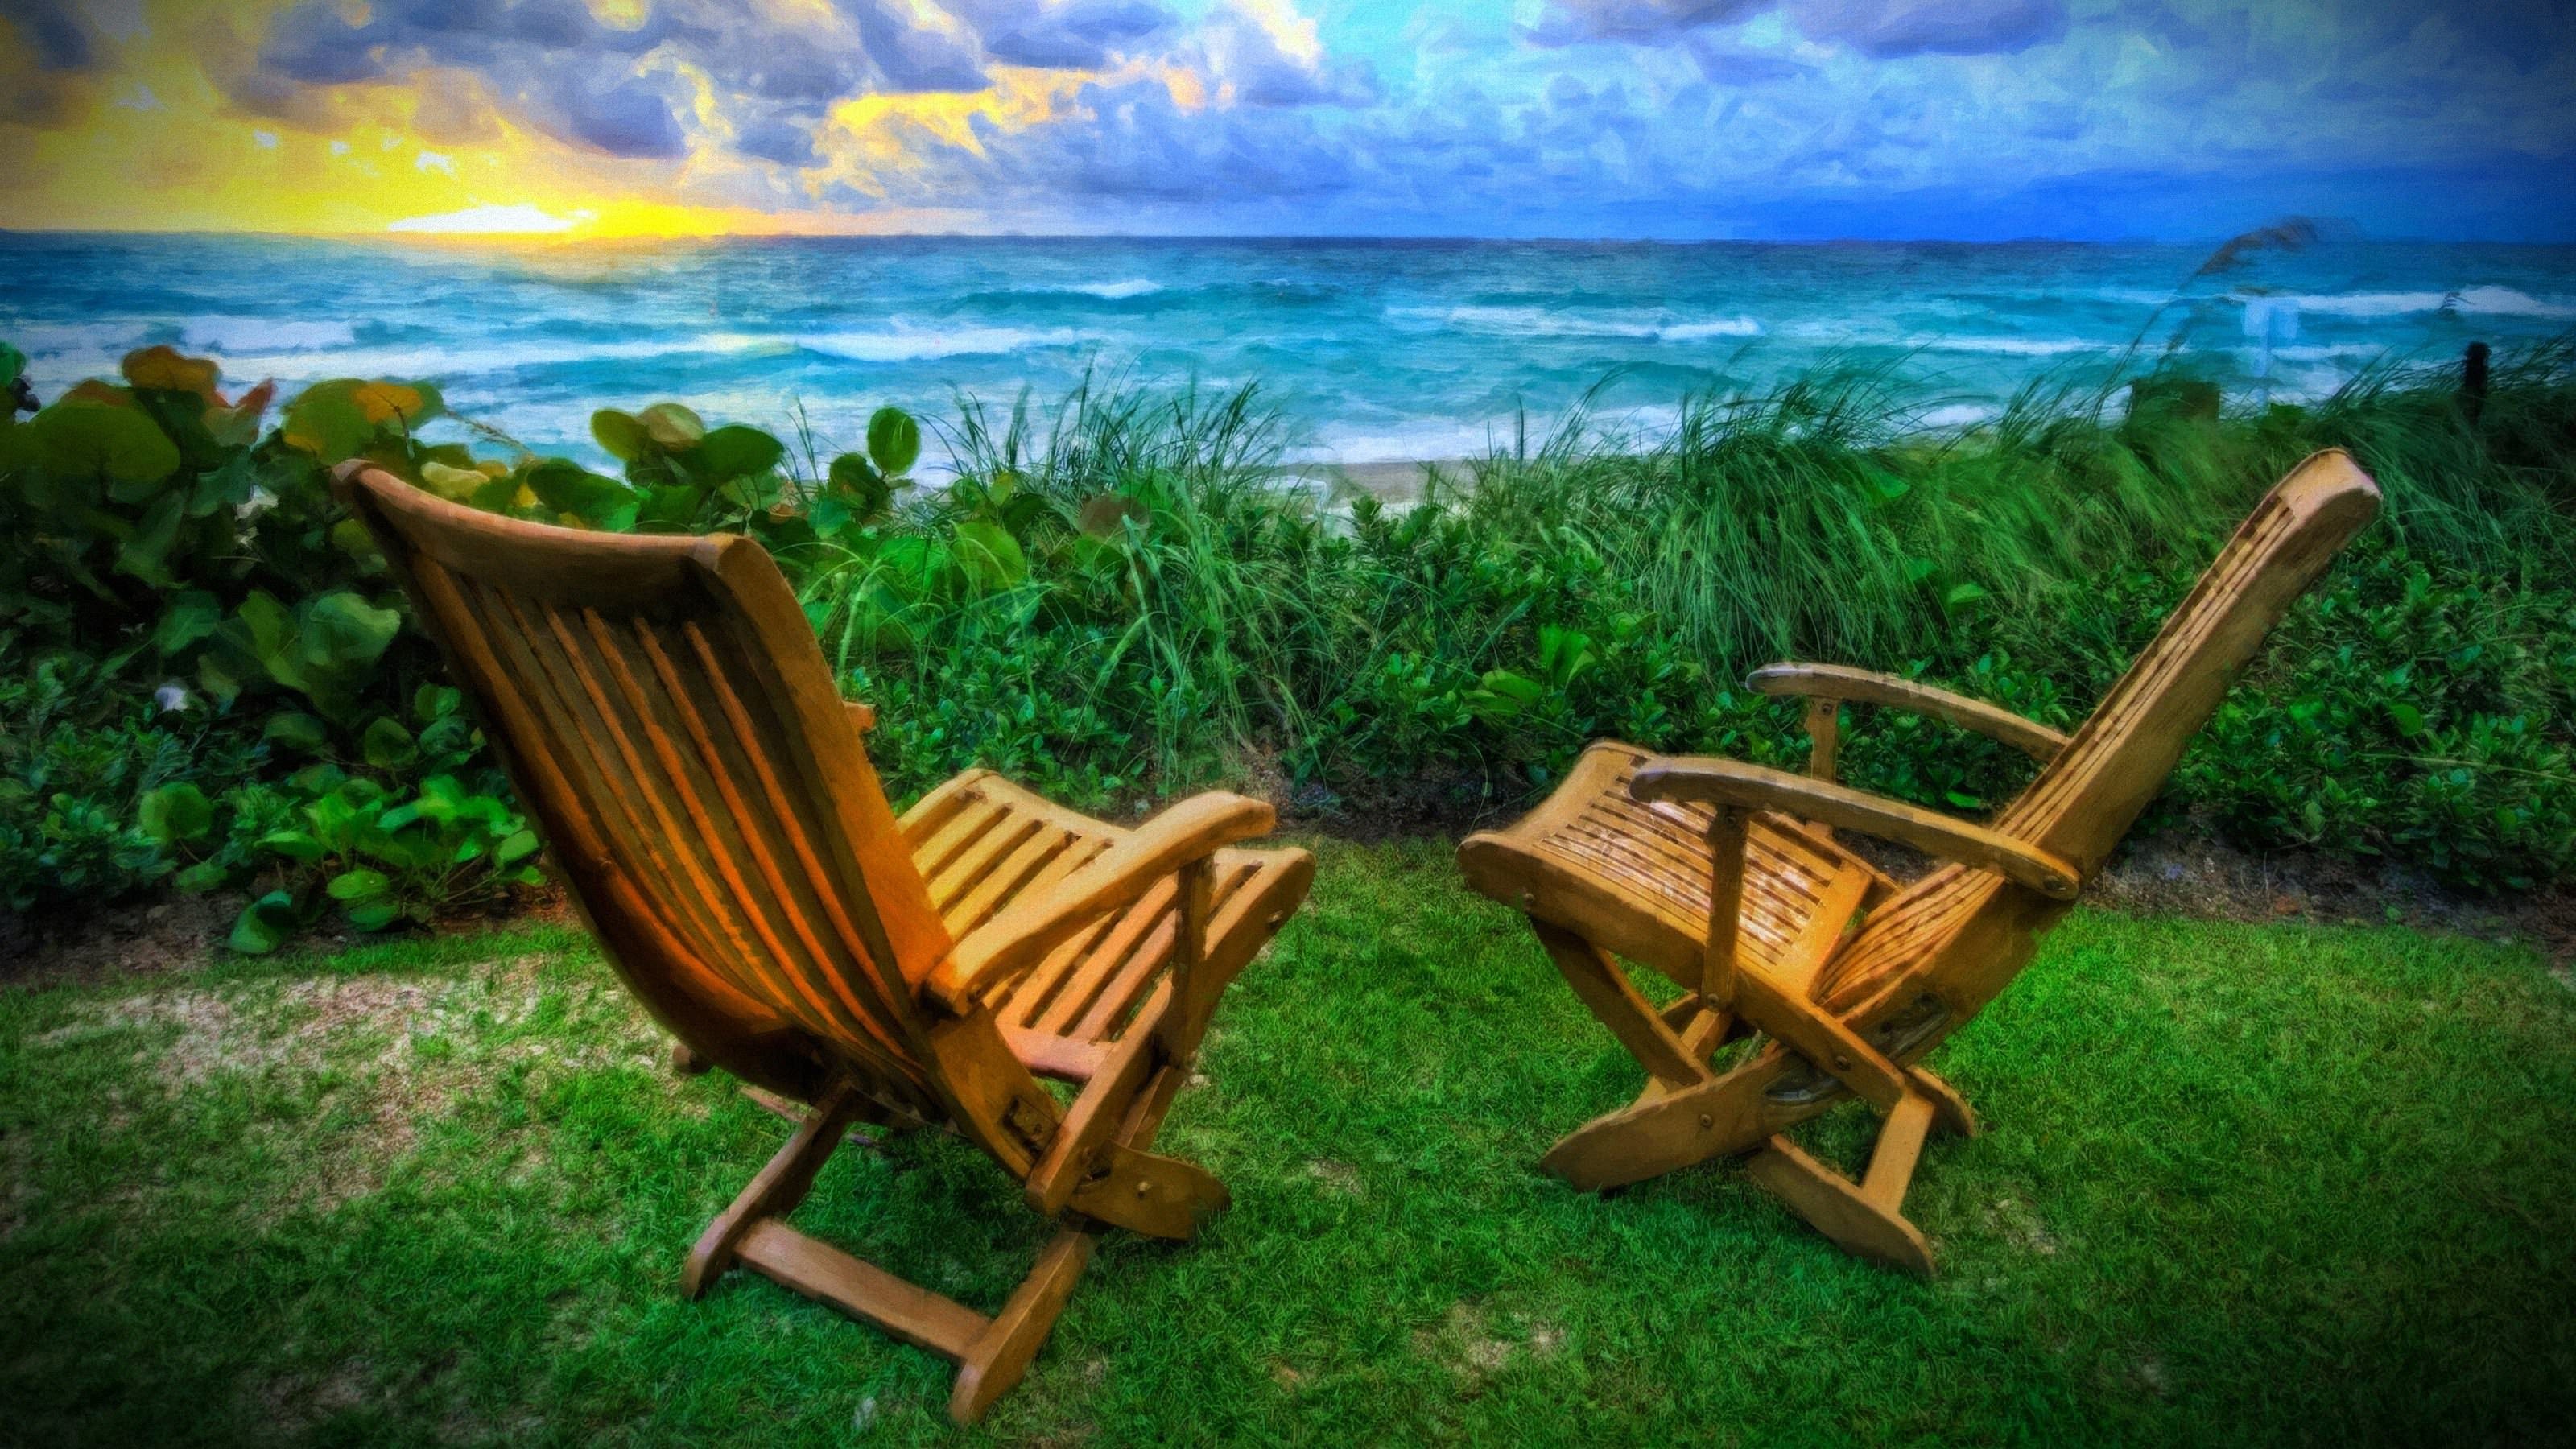 General 3200x1800 sea HDR beach chair sunset